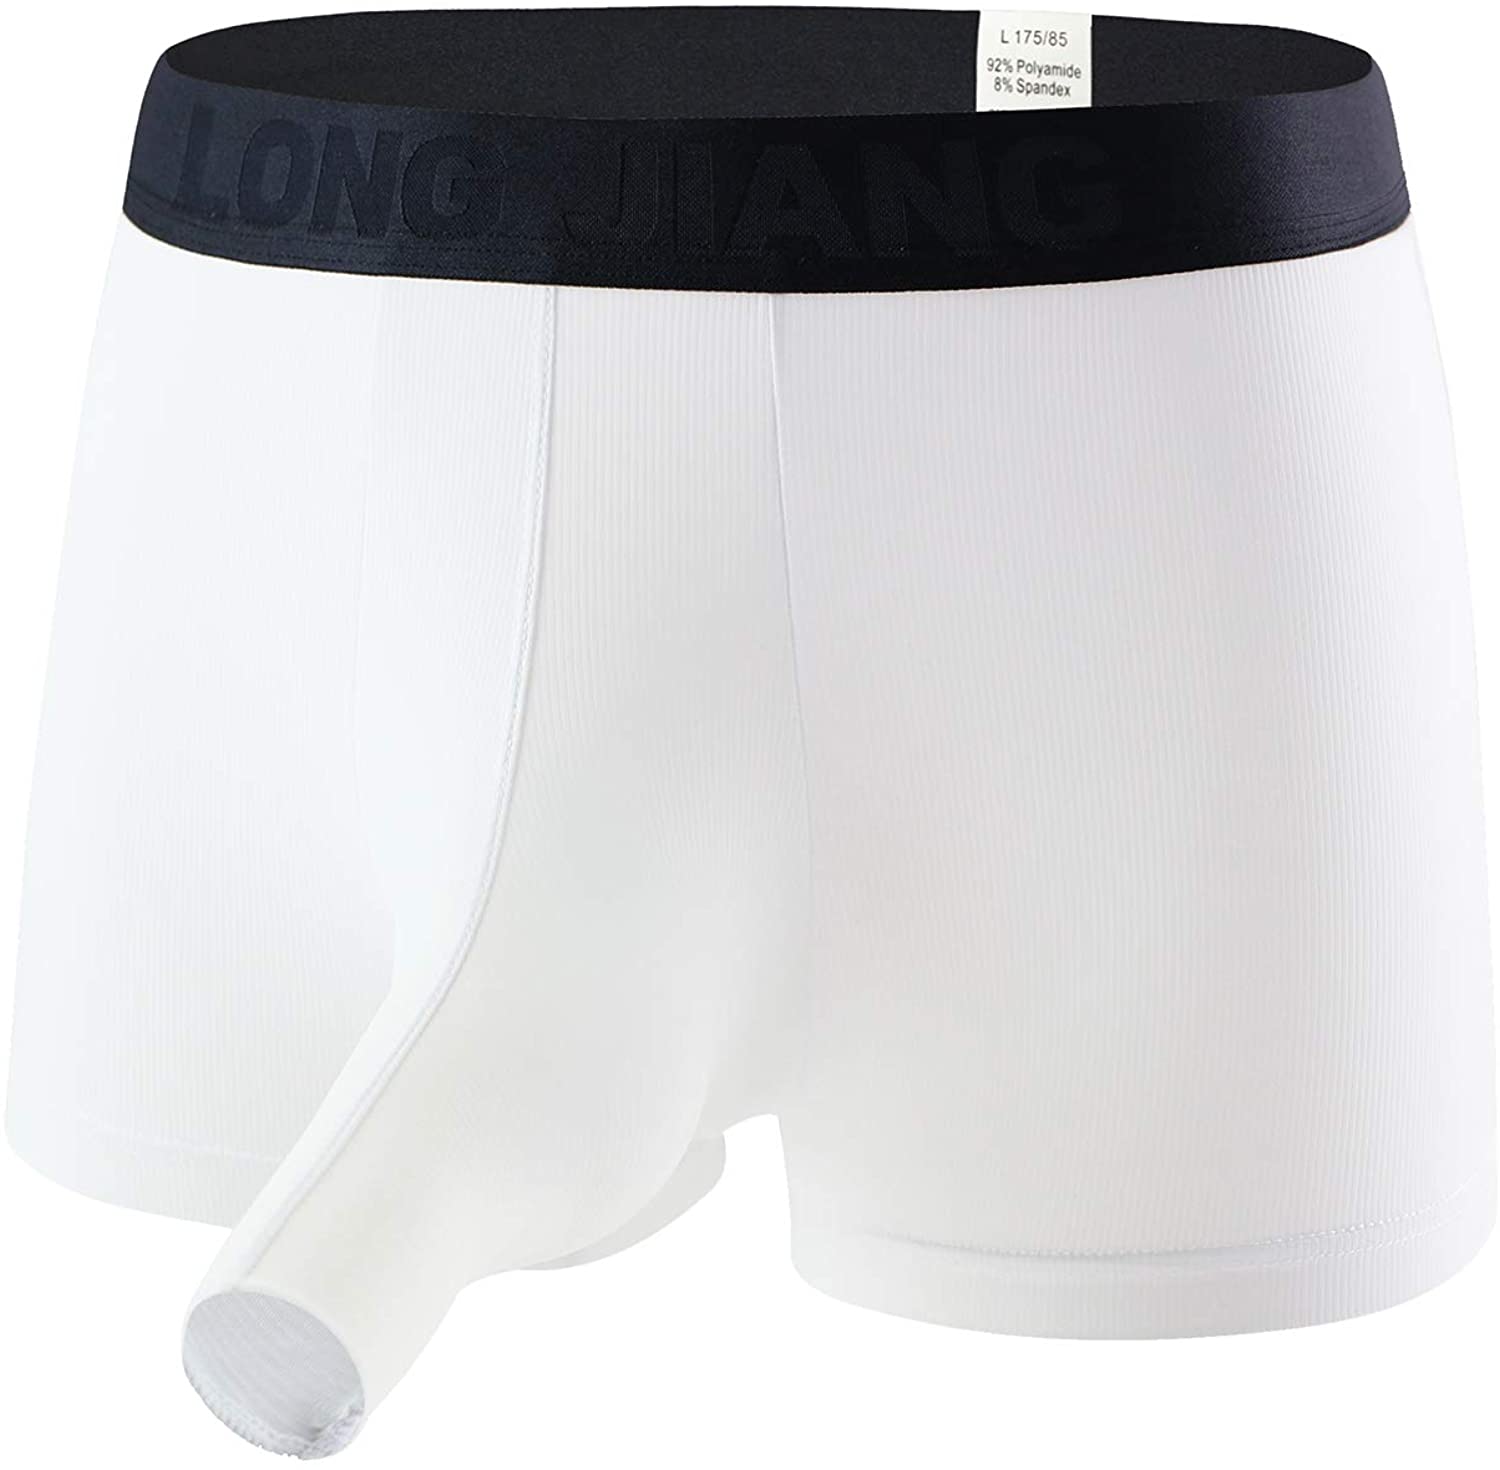 Eywlwaar Men's Ice Silk Boxer Briefs Pouch Trunks Breathable Underwear